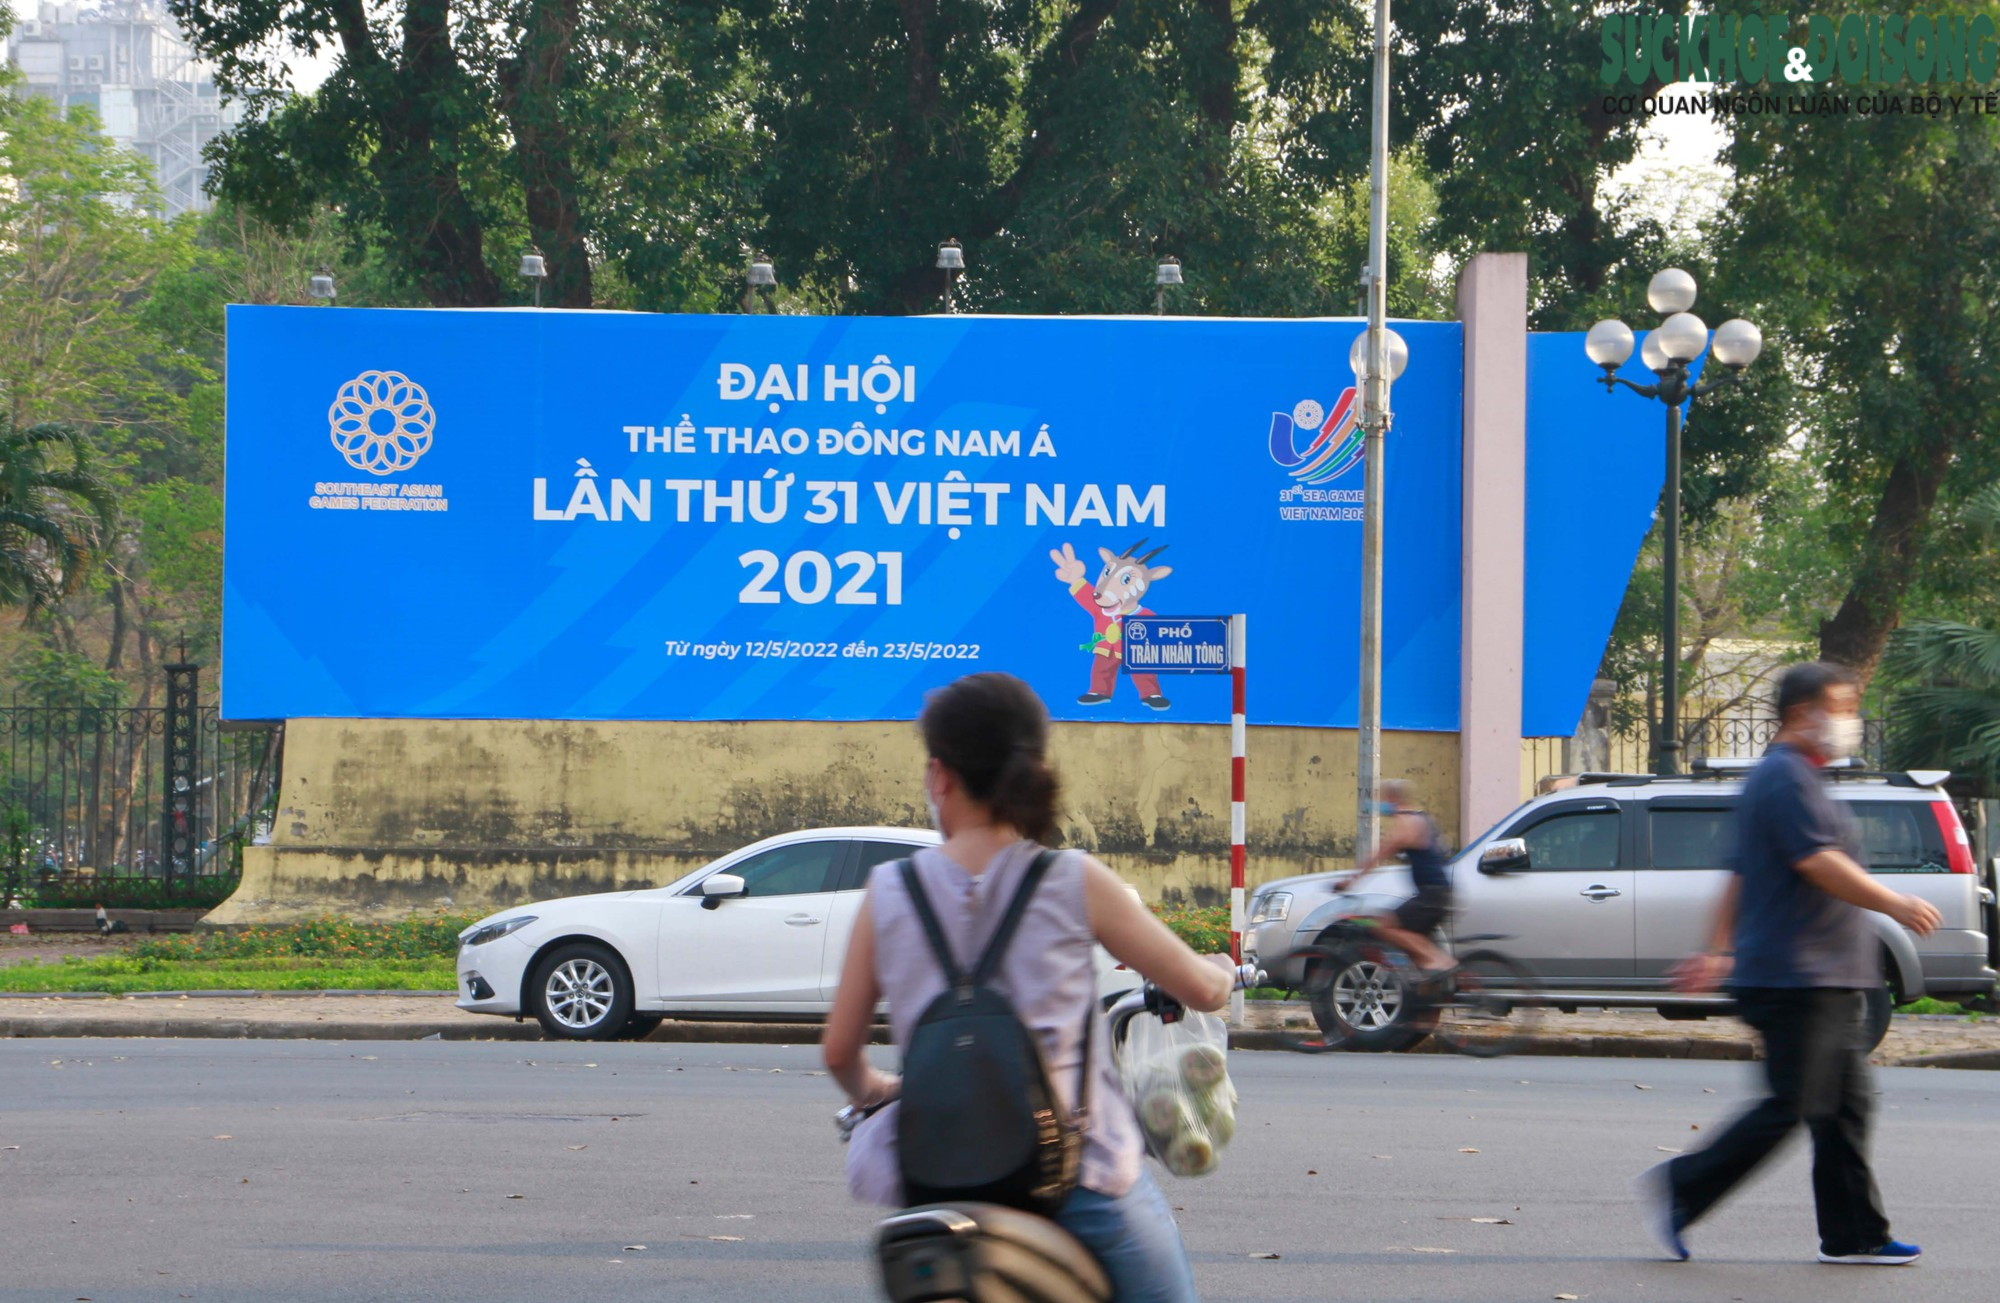 SEA Games 31 và hình ảnh Việt Nam đang chờ đón các vận động viên và khách du lịch đến quốc gia mình. Hãy xem ngay hình ảnh liên quan đến SEA Games 31 và Việt Nam để cảm nhận vẻ đẹp, tinh thần thể thao và văn hóa của đất nước này.